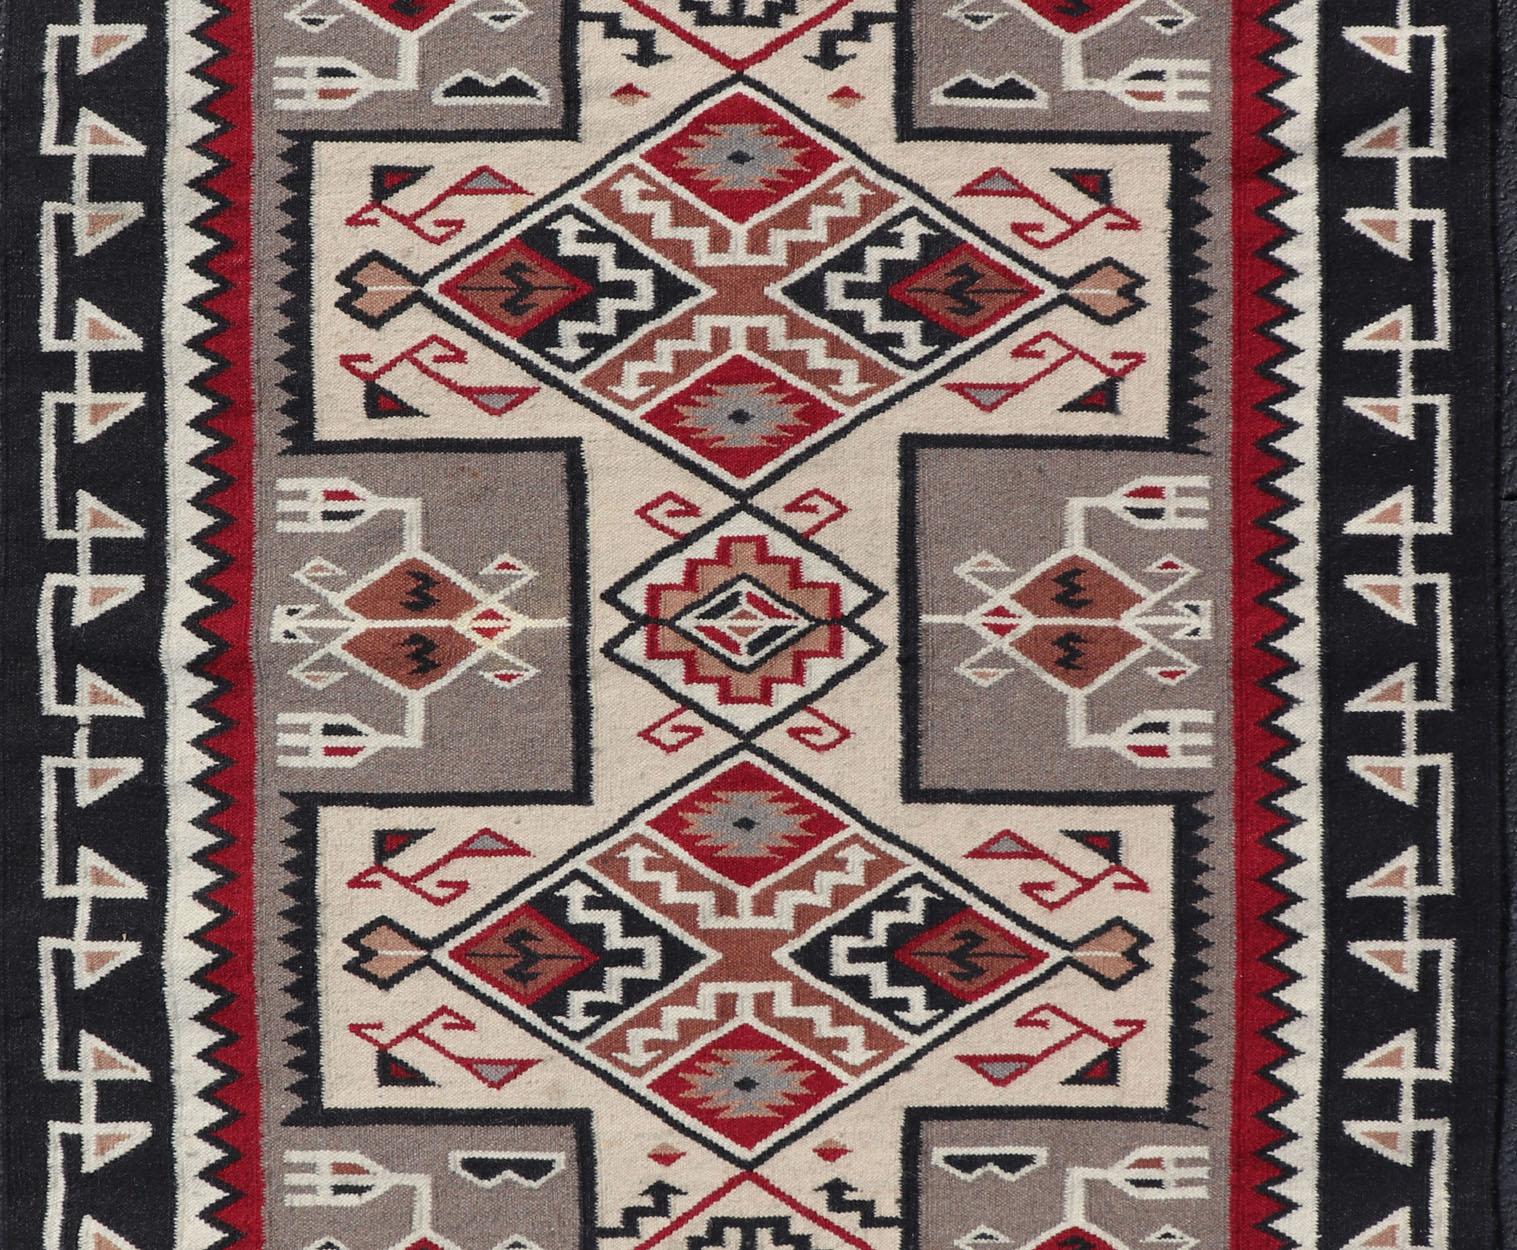 Vintage Hand Woven Navajo Style Rug in Grau, Elfenbein, Schwarz und Rot. Keivan Woven Arts/ Teppich/ X23-0104, Herkunftsland / Art: Amerika / Navajo, um 1980

Maße:4'0 x 6'0

Dieser faszinierende Navajo-Teppich wurde Ende des 20. Jahrhunderts